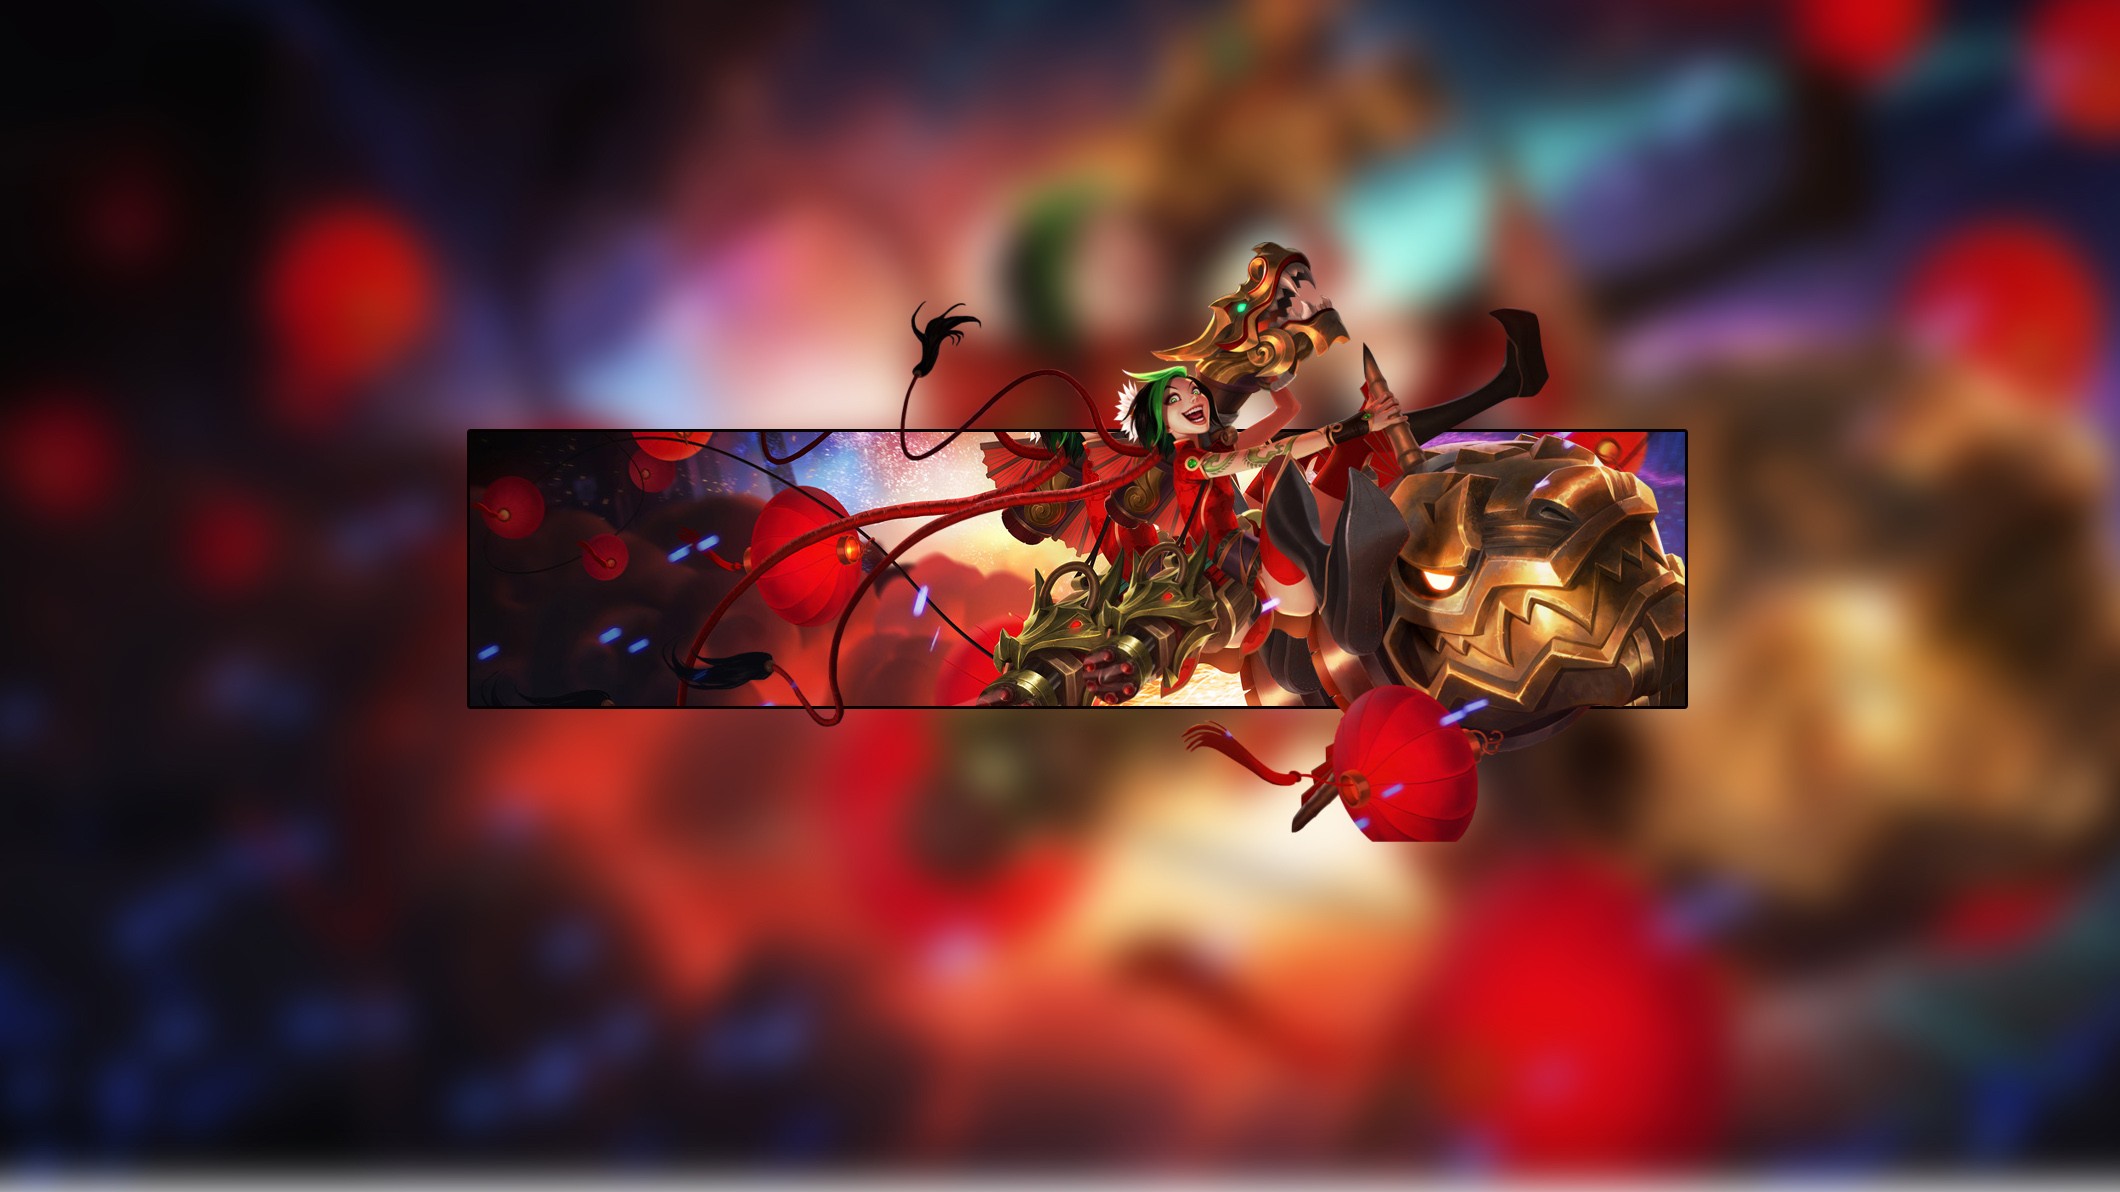 Firecracker Jinx By Insane Hd Wallpaper Fan Art Artwork - League Of Legends - HD Wallpaper 